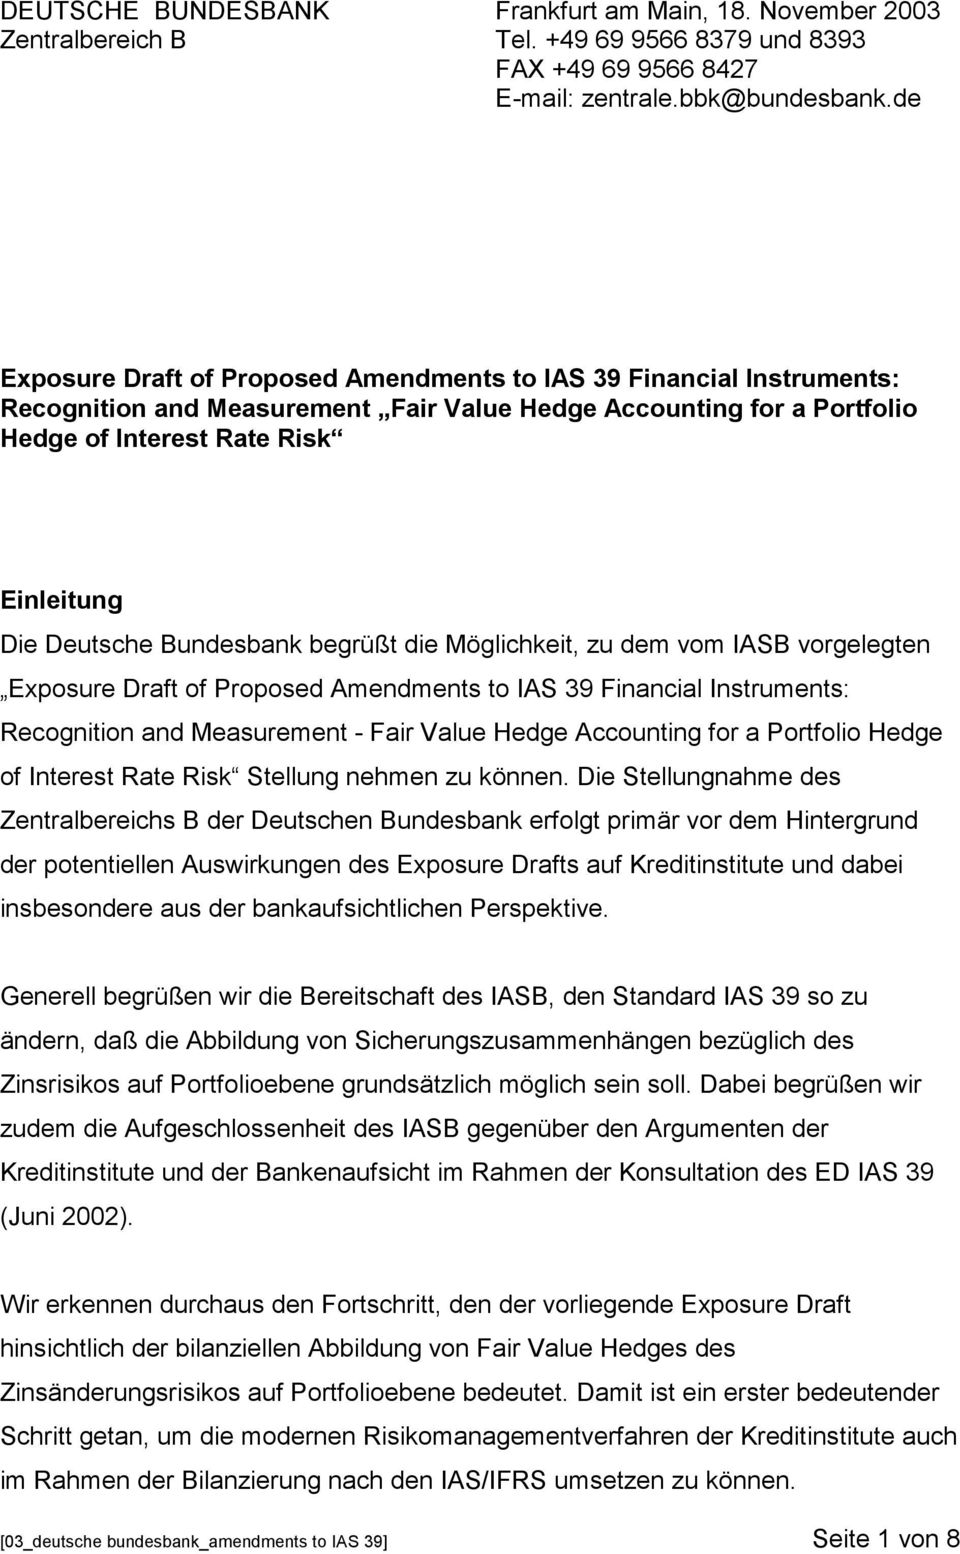 Bundesbank begrüßt die Möglichkeit, zu dem vom IASB vorgelegten Exposure Draft of Proposed Amendments to IAS 39 Financial Instruments: Recognition and Measurement - Fair Value Hedge Accounting for a